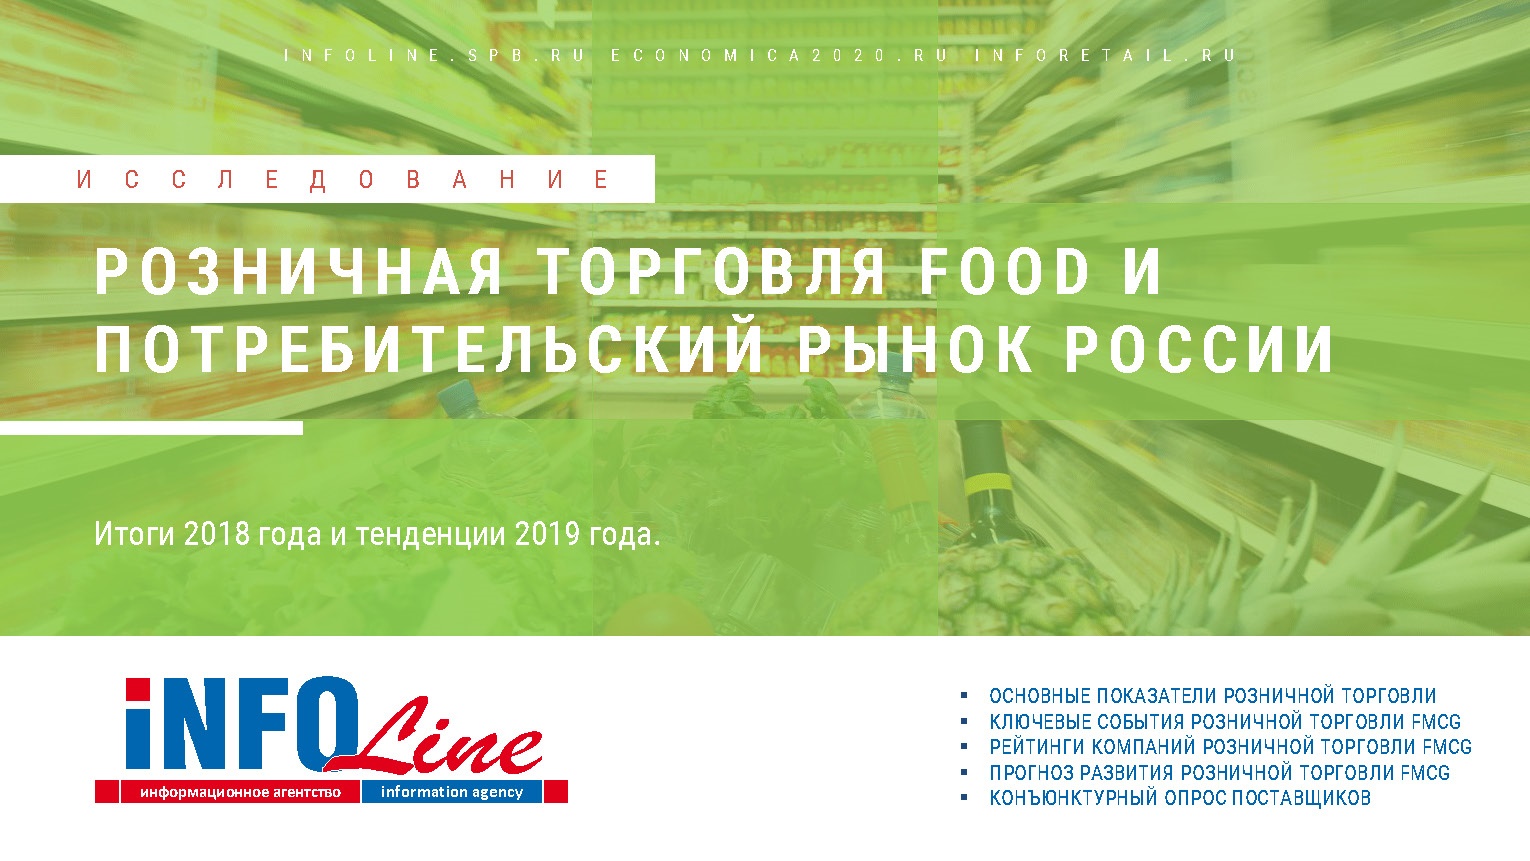 "Розничная торговля Food и потребительский рынок России. Итоги 2018 года и тенденции 2019 года. Перспективы развития до 2021 года" (доступна обновленная версия)